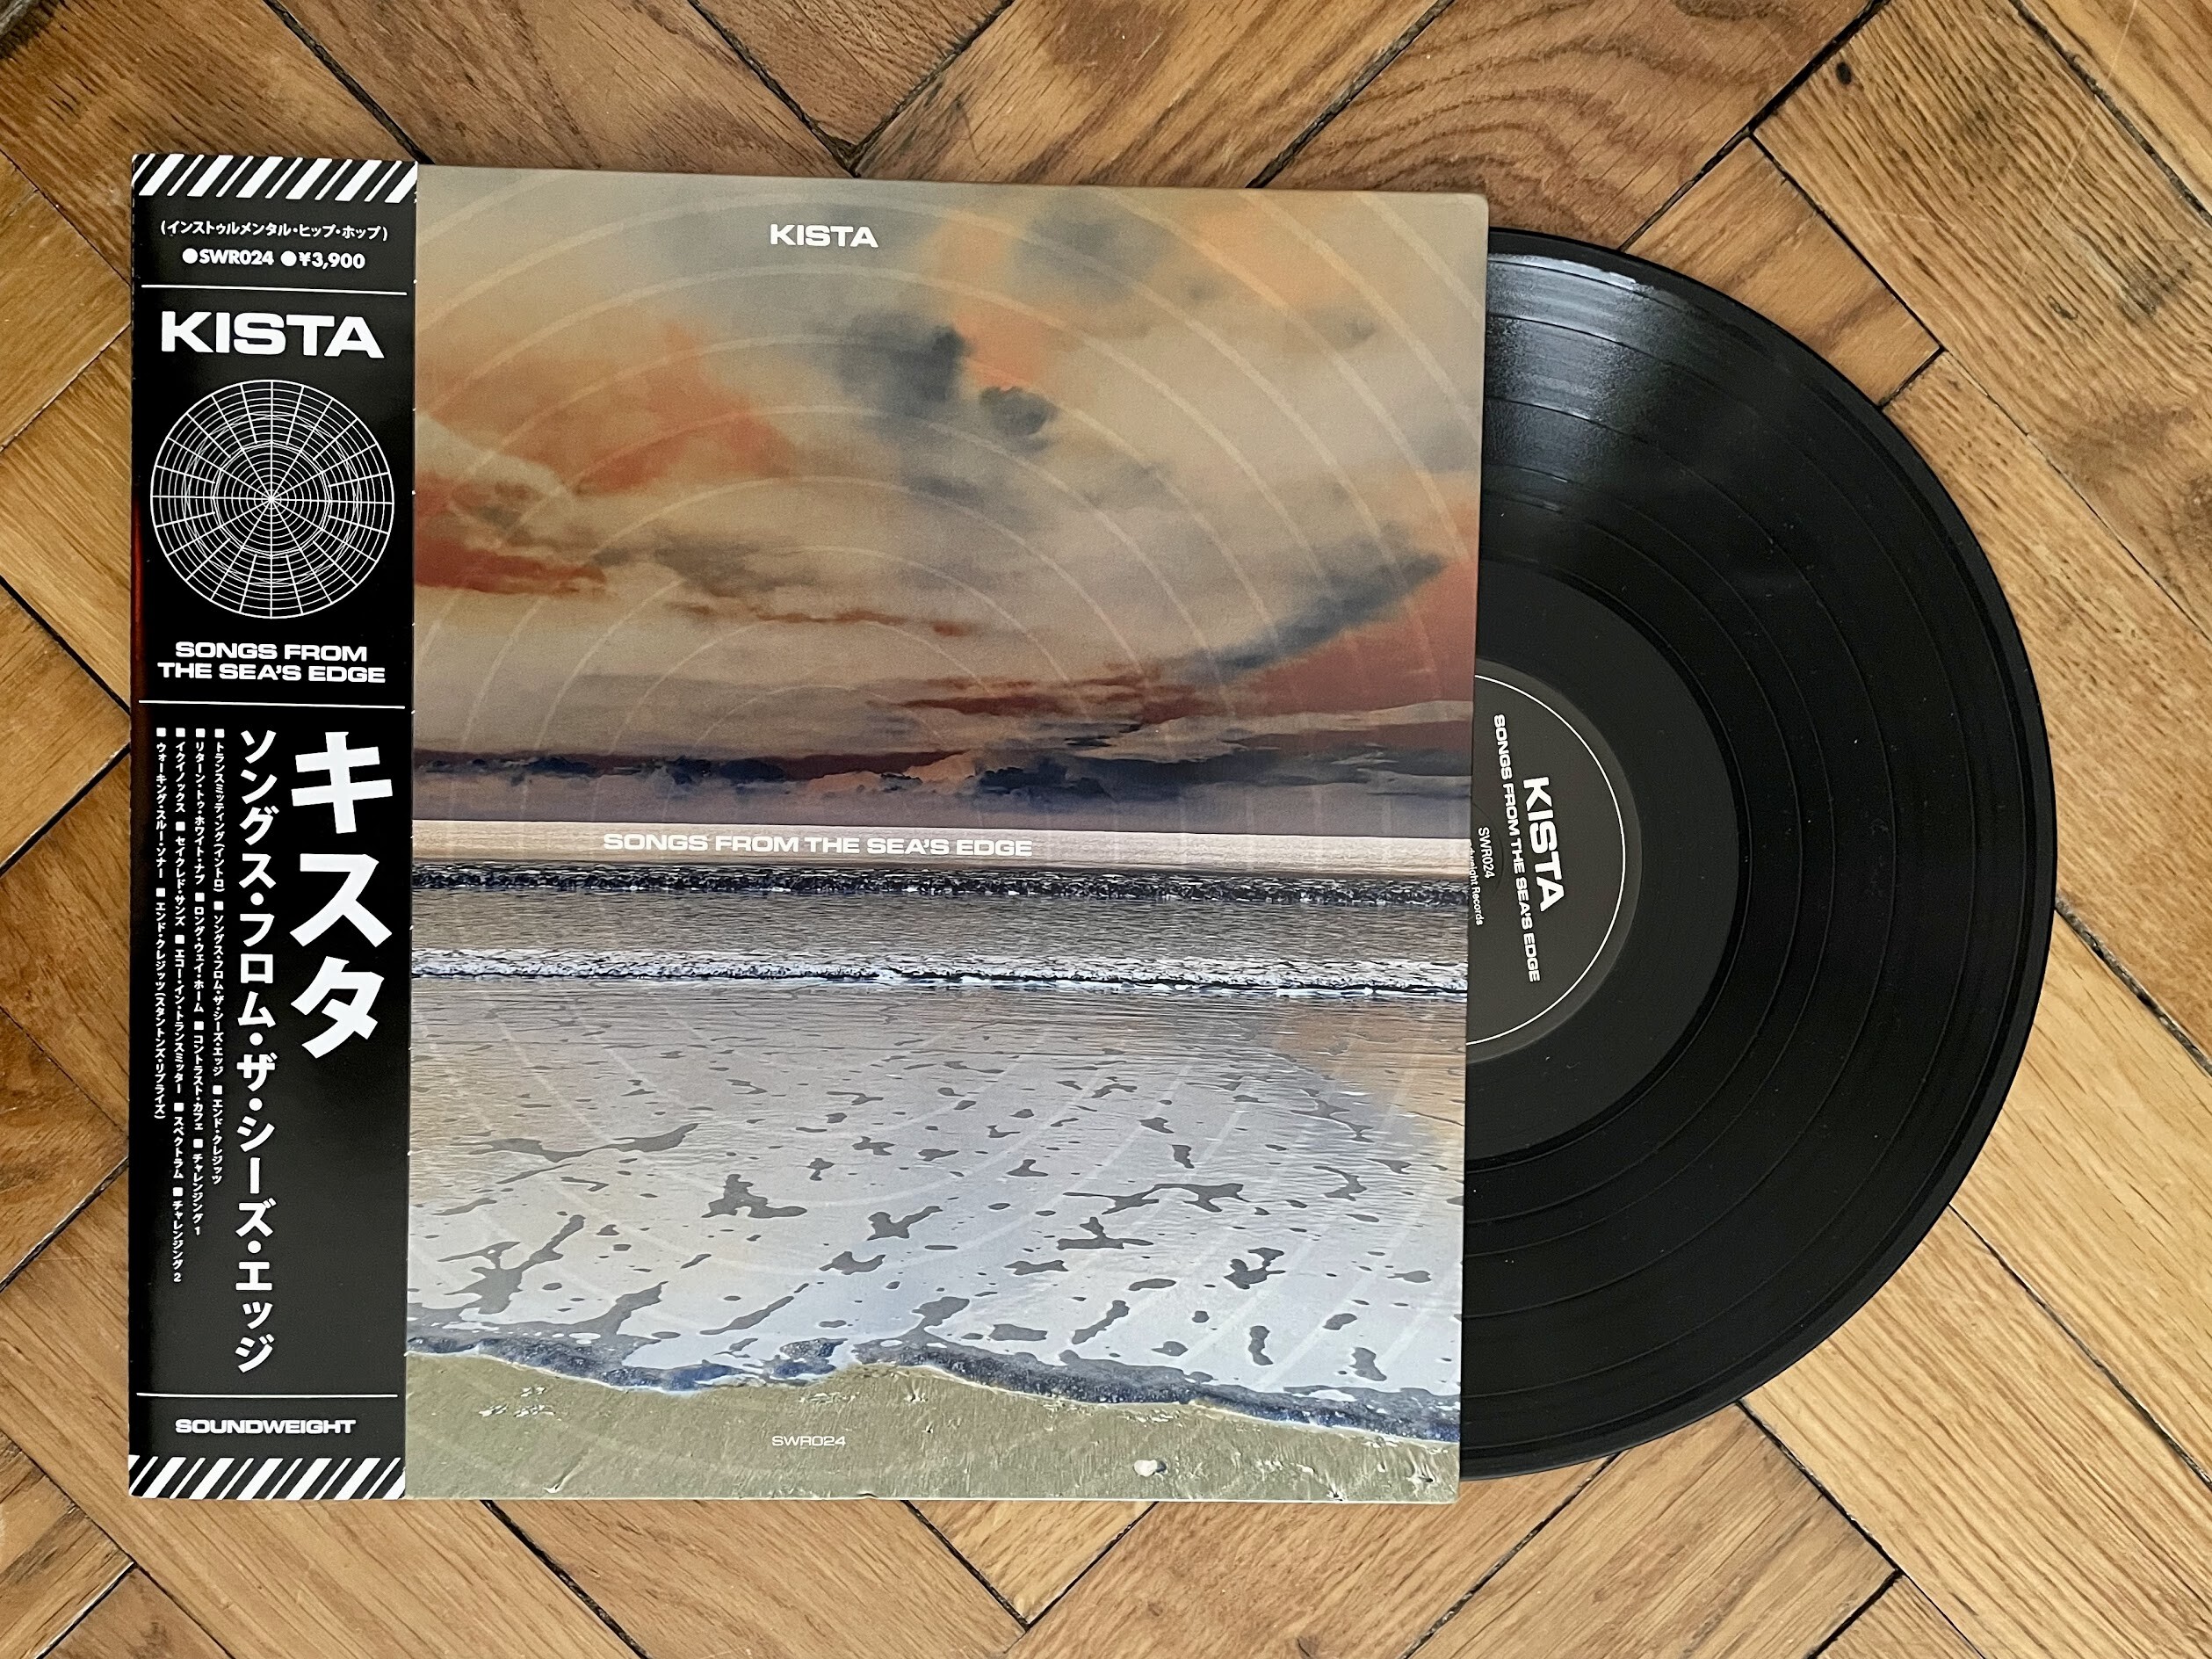 Quarantäne Edition Nr. 3 - Kista – Songs From The Sea’s Edge